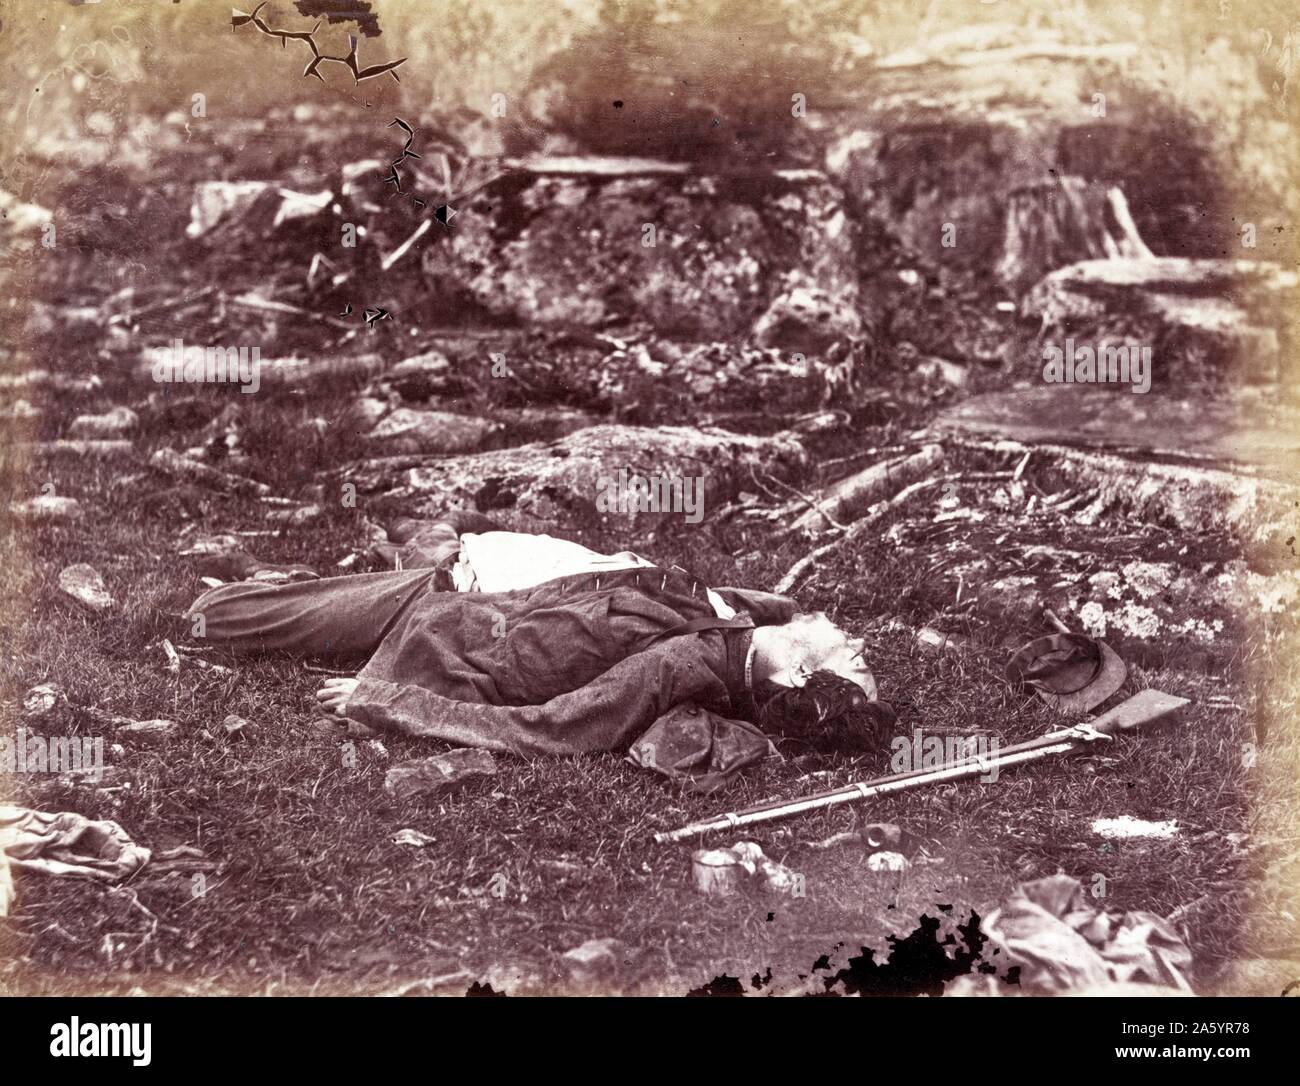 Impression photomécanique d'une personne décédée au cours de tireur de la bataille de Gettysburg. La bataille de Gettysburg a duré du 1 juillet, 1863 Ñ3, dans et autour de la ville de Gettysburg, Pennsylvanie, par l'Union européenne et les forces confédérées pendant la guerre civile américaine. Photographié par Alexander Gardner (1821-1882), photographe écossais ayant émigré aux États-Unis. Datée 1863 Banque D'Images